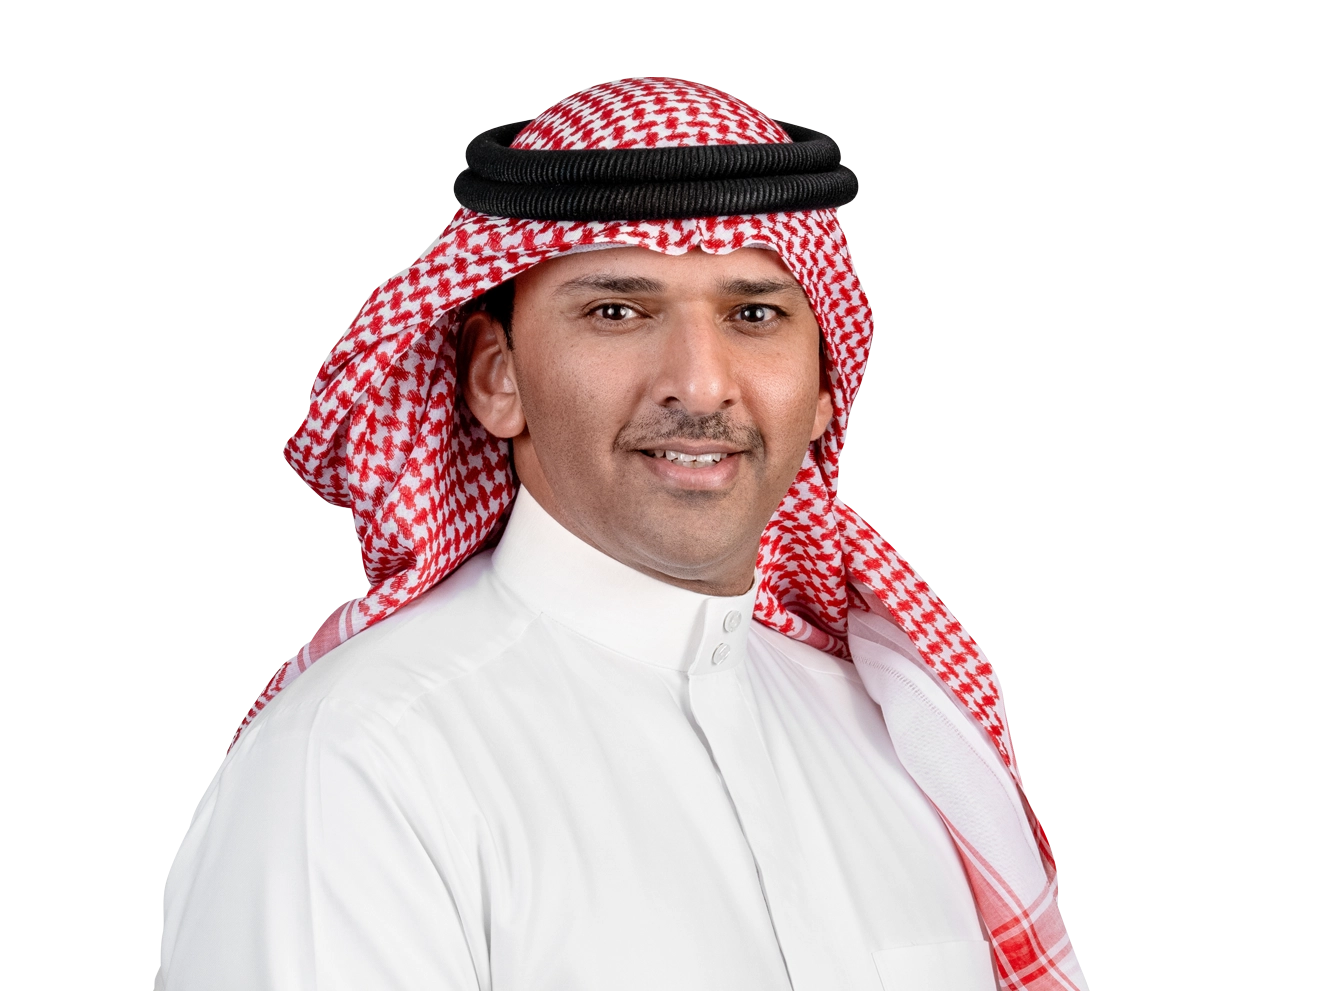 Shaikh Ali Bin Khalifa Al Khalifa